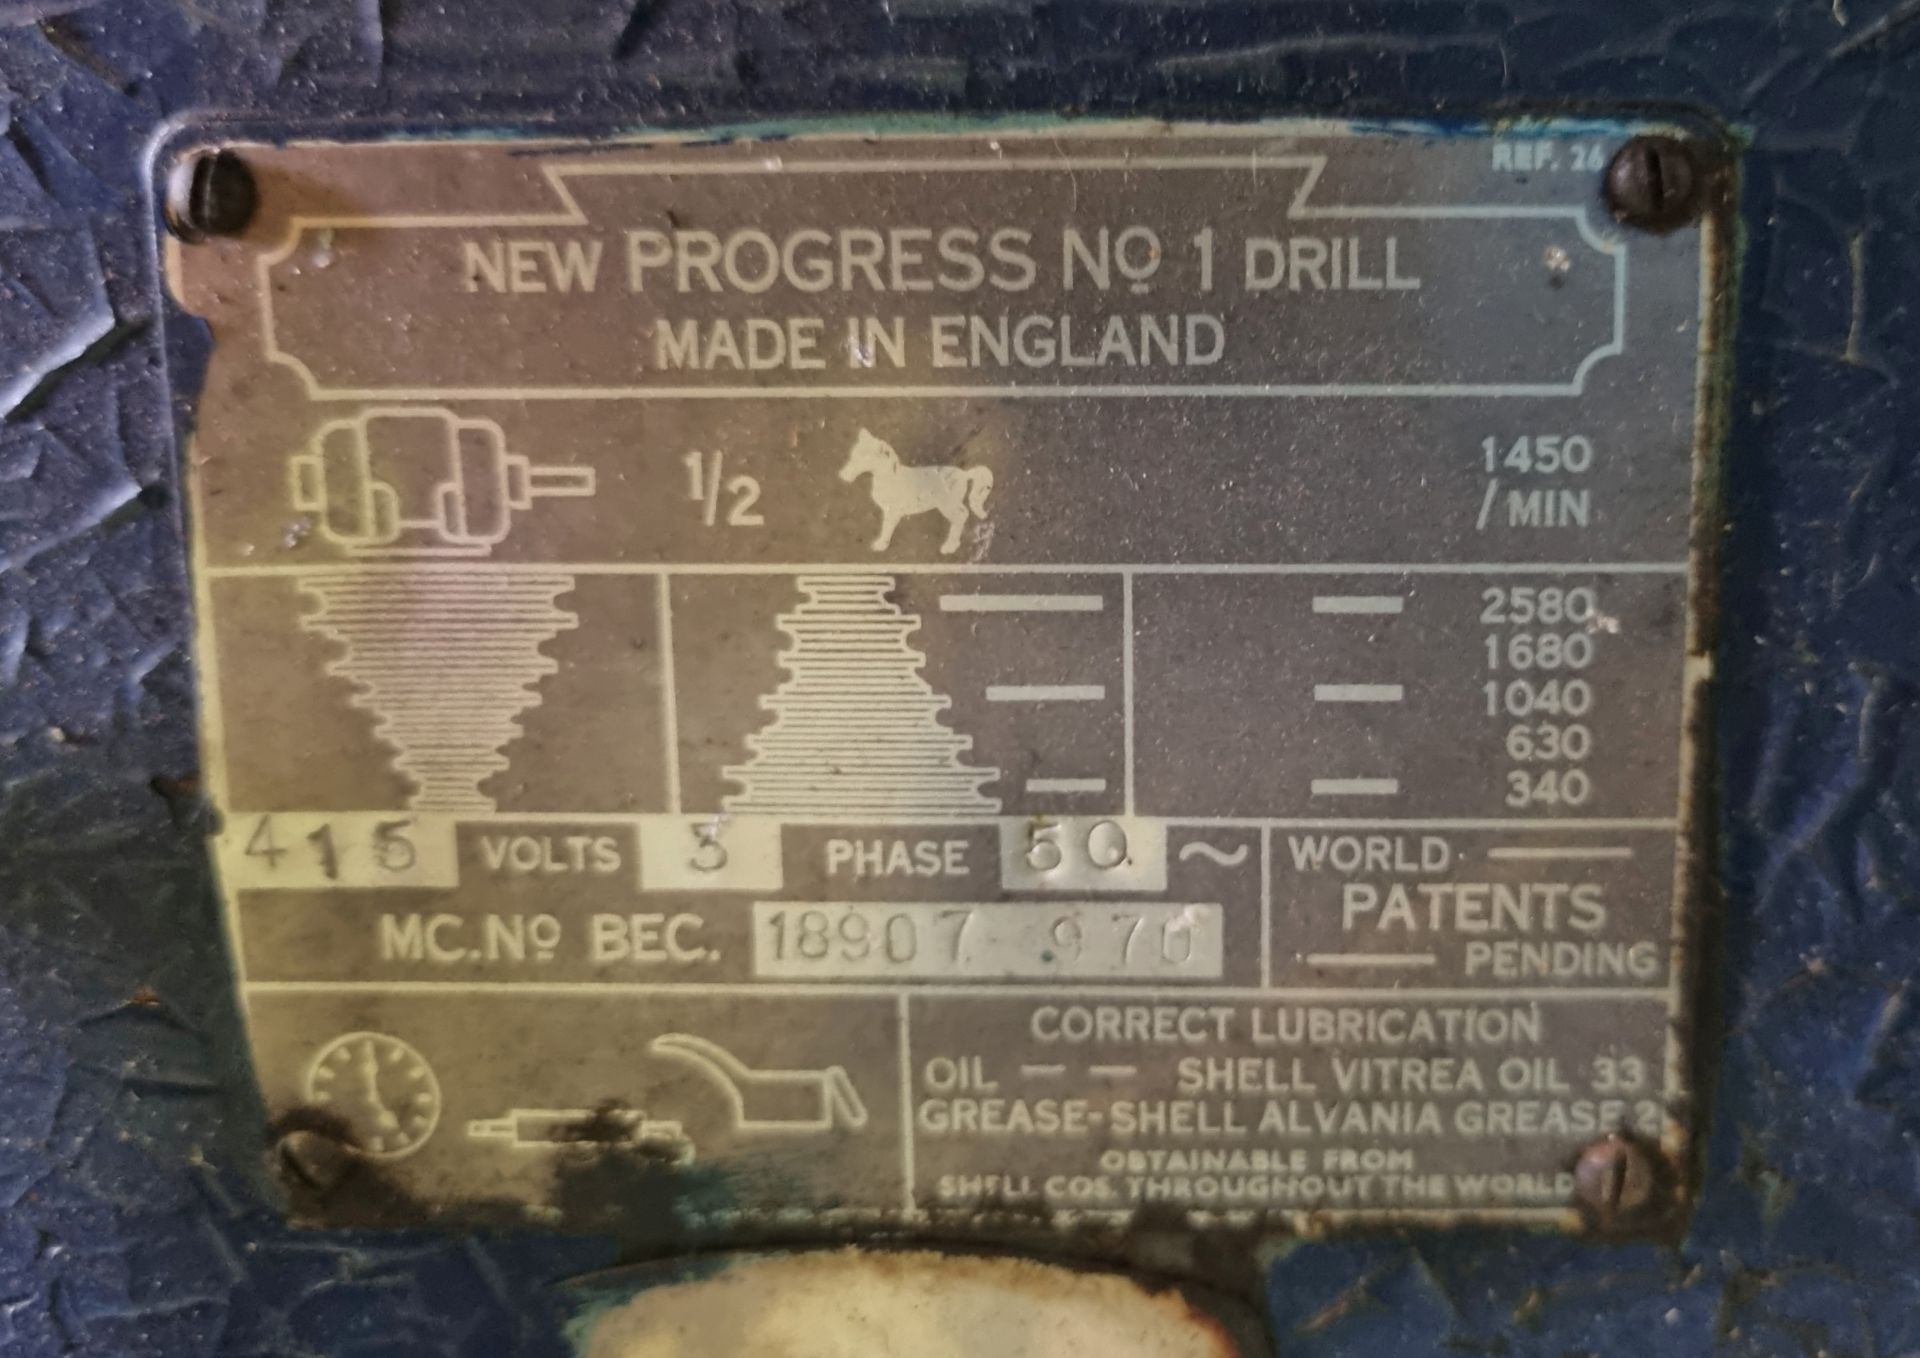 New Progress No.1 pillar drill - 415V - 3ph - Image 6 of 10